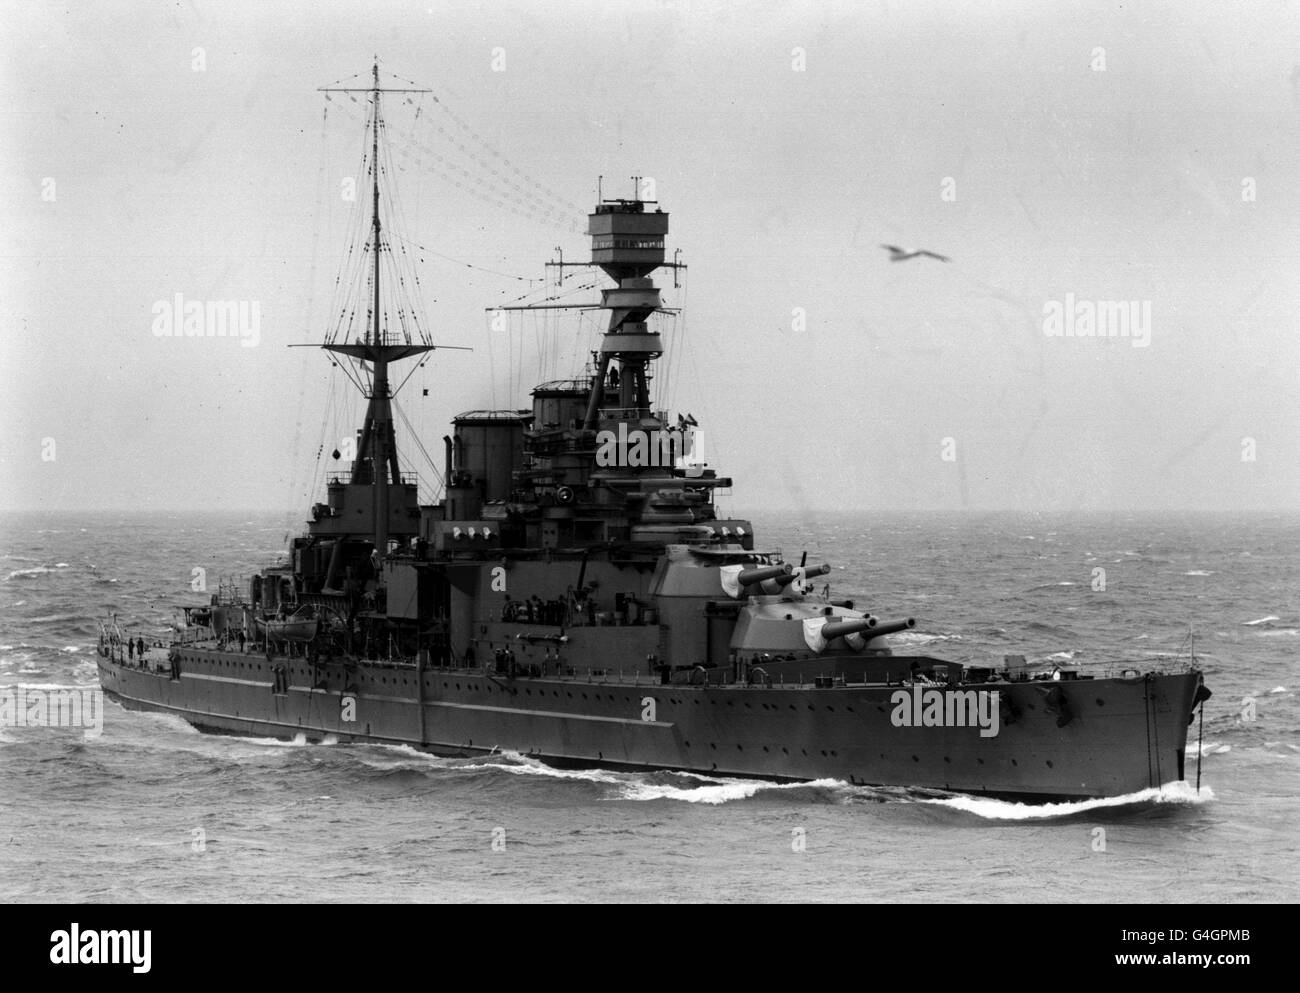 10/12/1941 - an diesem Tag in der Geschichte - wurden die Schlachtschiffe HMS Repulse und HMS Prince of Wales von japanischen Flugzeugen der Küste von Singapur versenkt. PA NEWS PHOTO 30/10/26 DIE EMPIRE-PREMIEREN BESUCHEN DIE BRITISCHE ATLANTIKFLOTTE: DER BATTLE CRUISER HMS STÖSST DAMPFEND IN AKTION Stockfoto